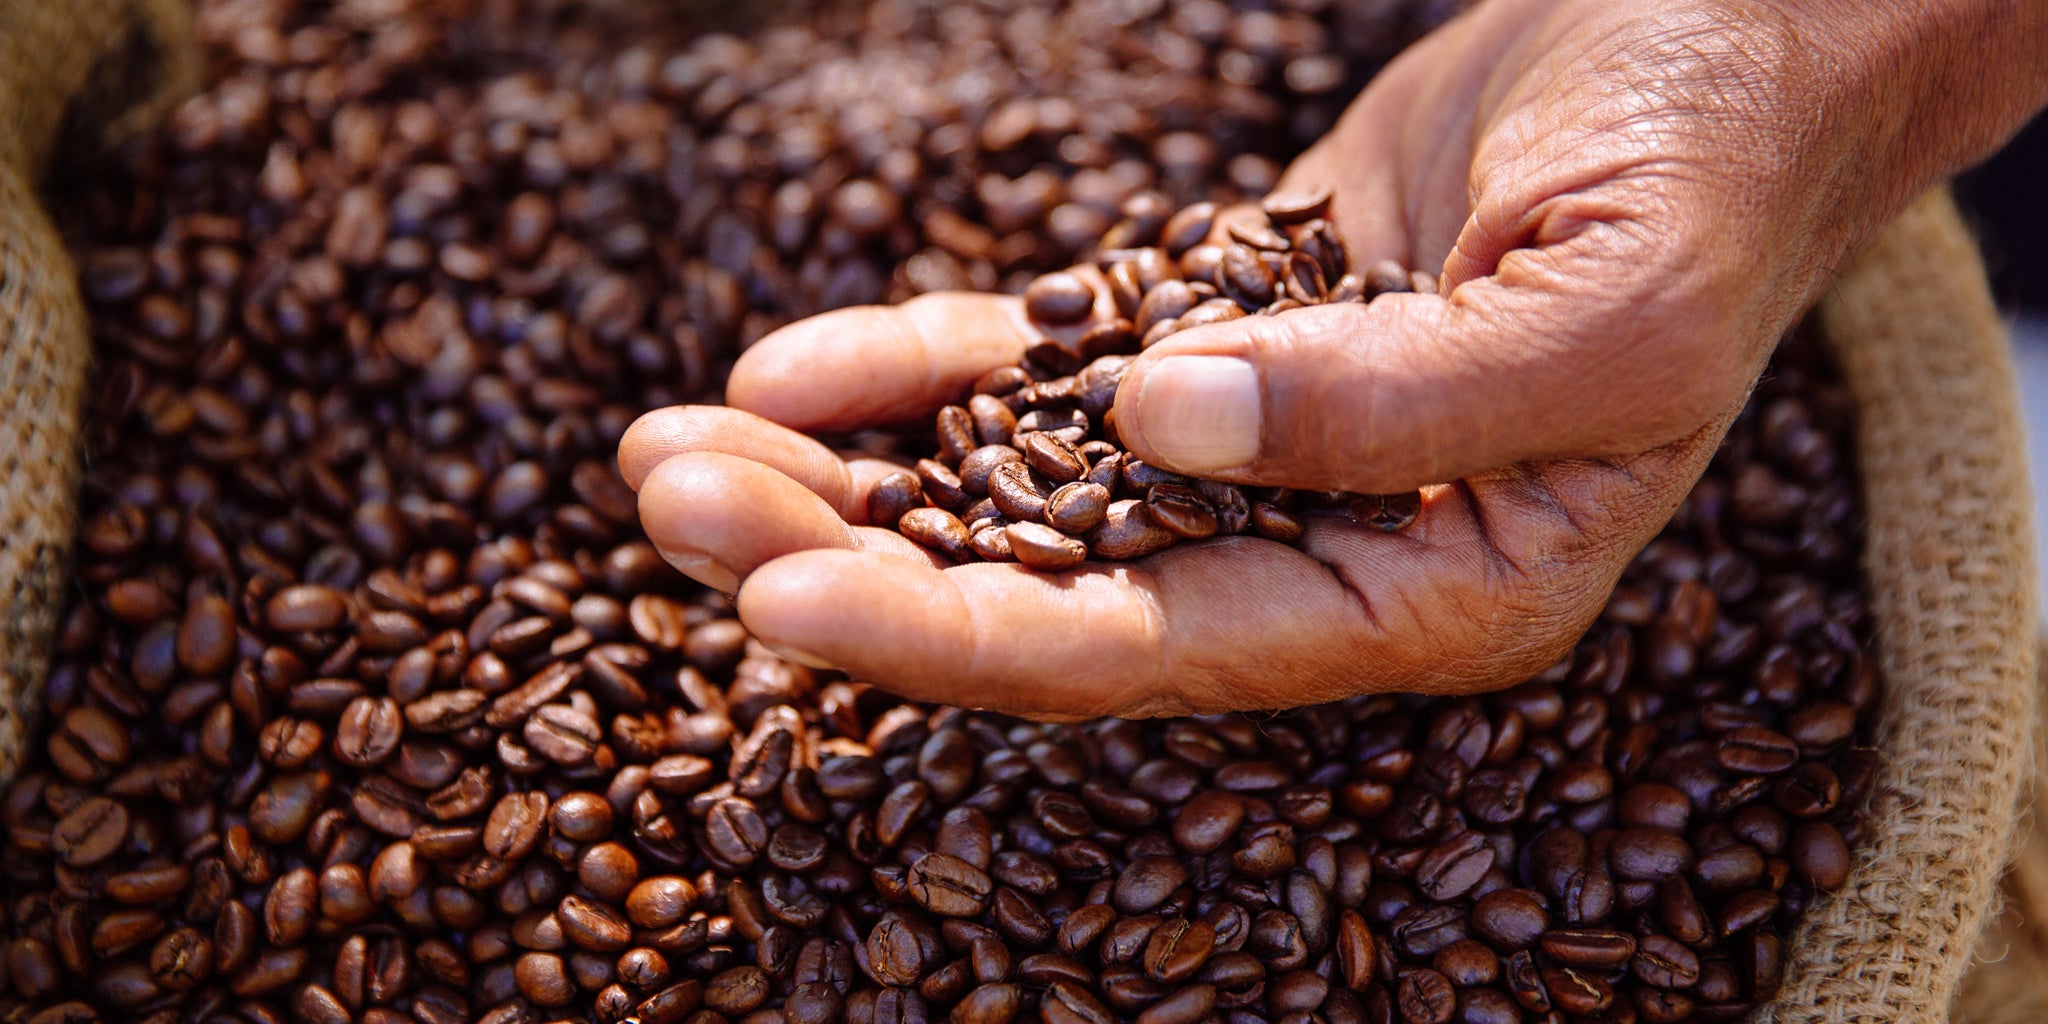 JustFreshRoasted produces amazing tasting Organic coffee capsules using 100% arabica.